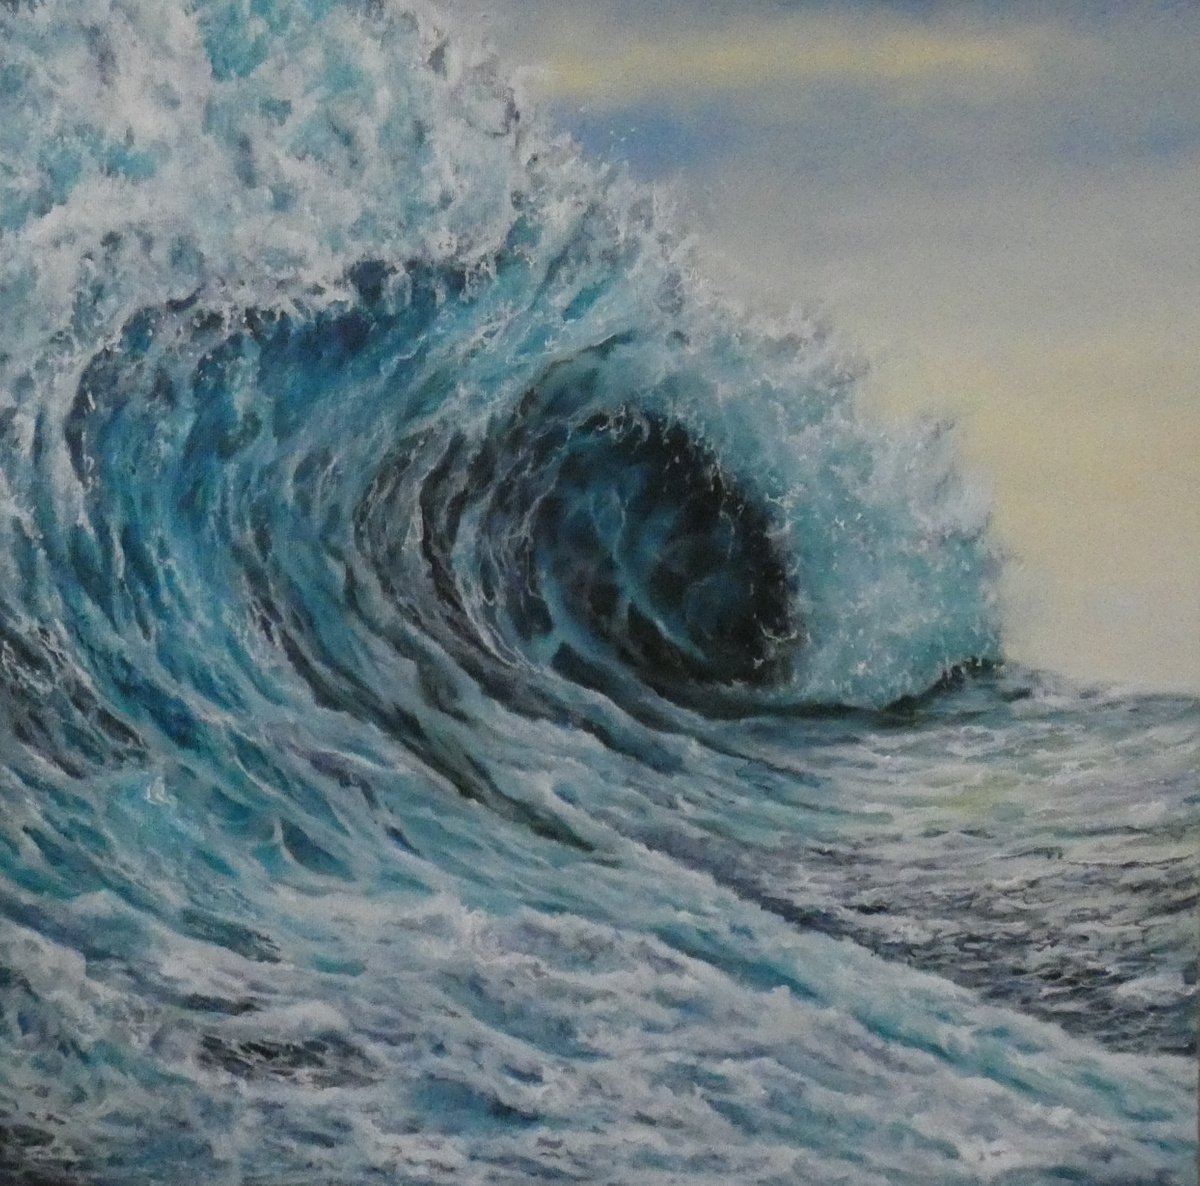 La carezza di un mare agitato - ocean wave by Gianluca Cremonesi